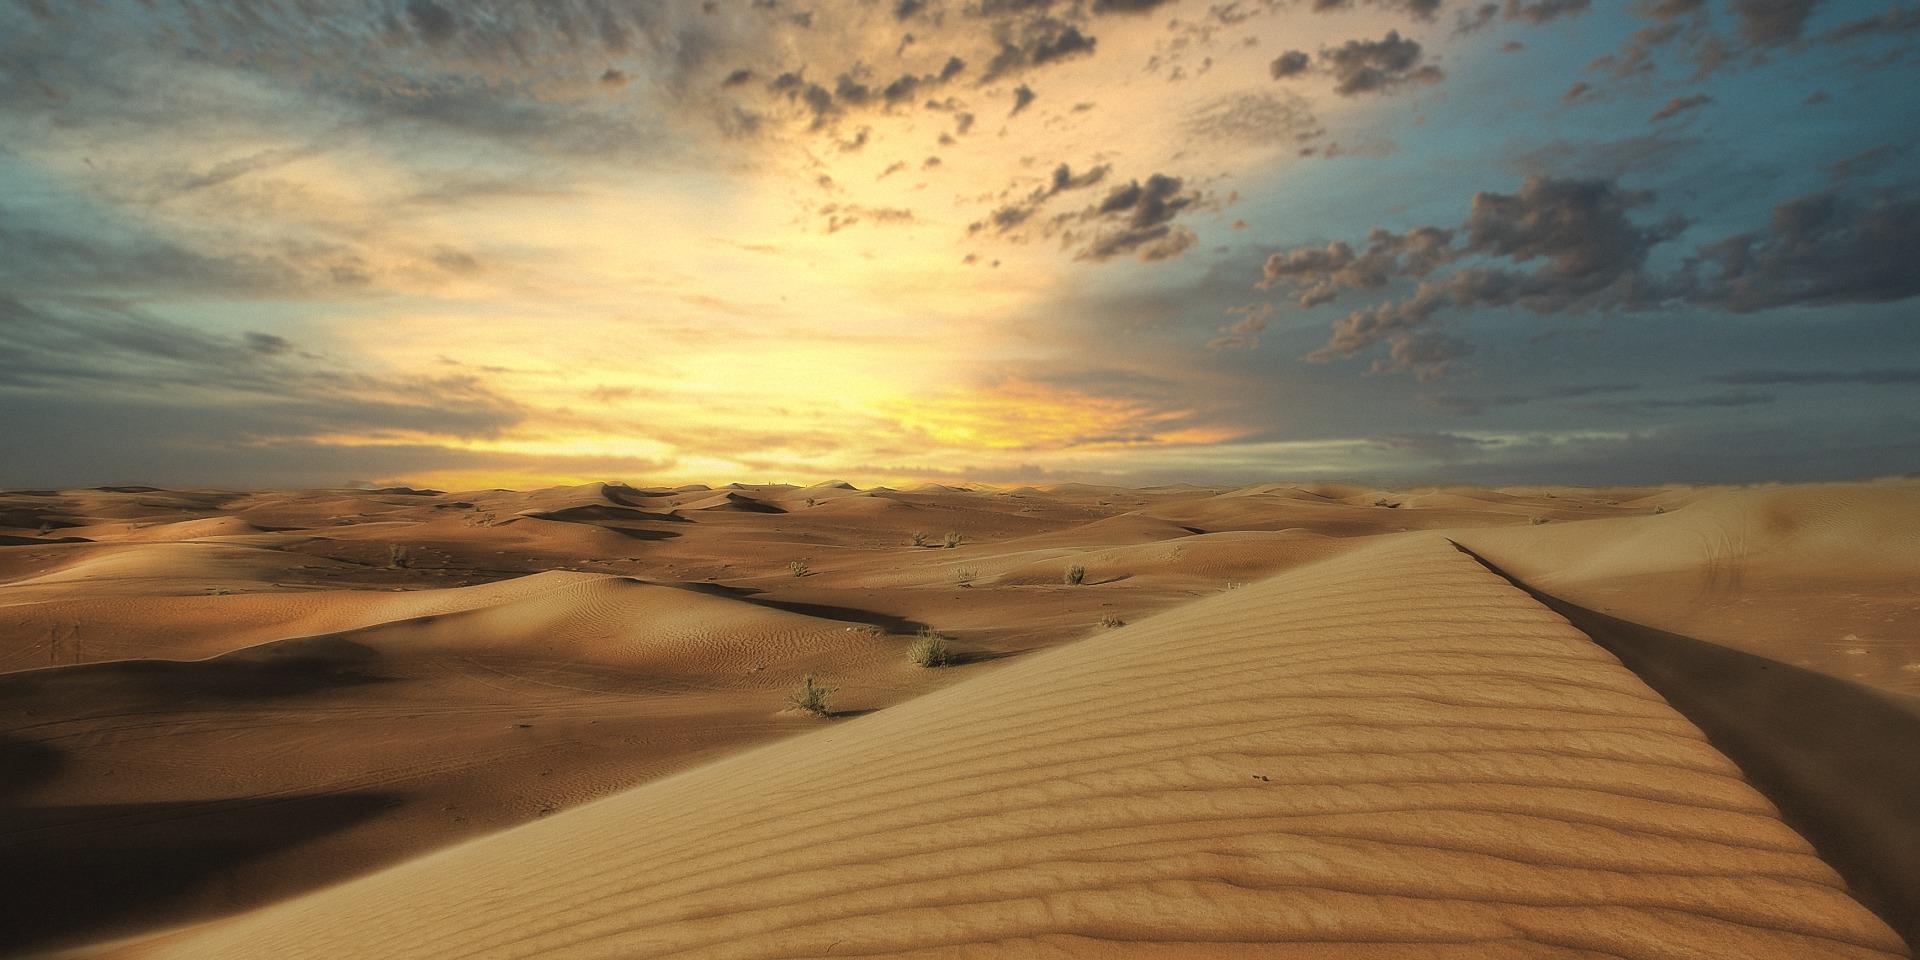 Wüste Arabische Emirate